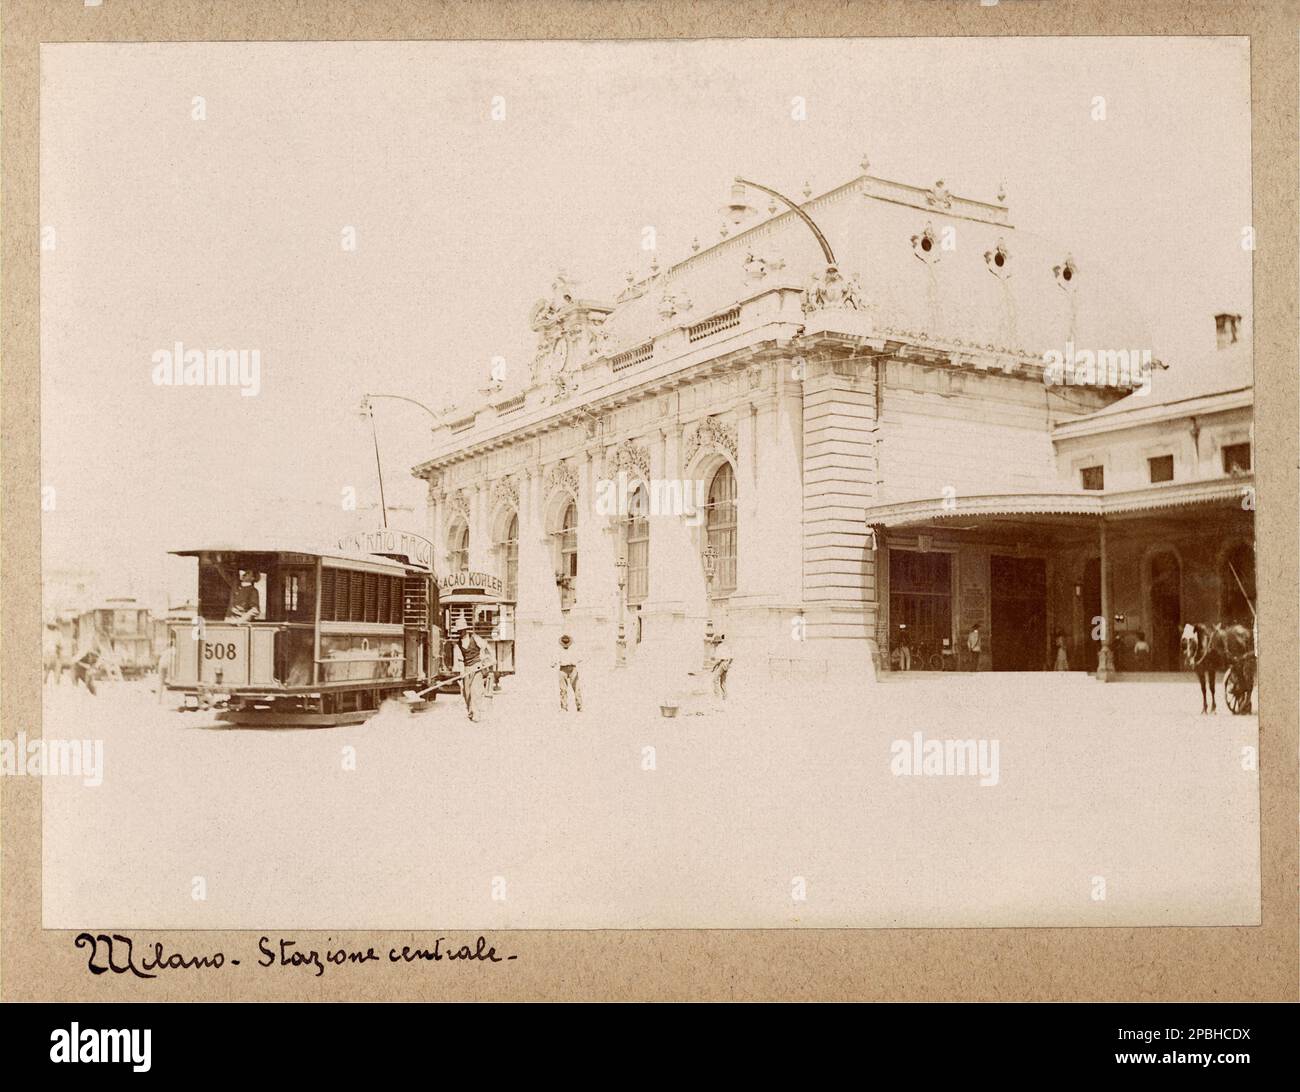 1900 CA , MILAN, ITALIE : la GARE CENTRALE (la gare de Cenral) , par l'architecte BOUCHOT - TRAM - TRENO - FS - FERROVIE - stazione ferroviaria - Architettura - architecture - ITALIA - FOTO STORICHE - HISTOIRE - GEOGRAFIA - GÉOGRAPHIE - MILAN - - - - - - - ---- Archivio GBB Banque D'Images